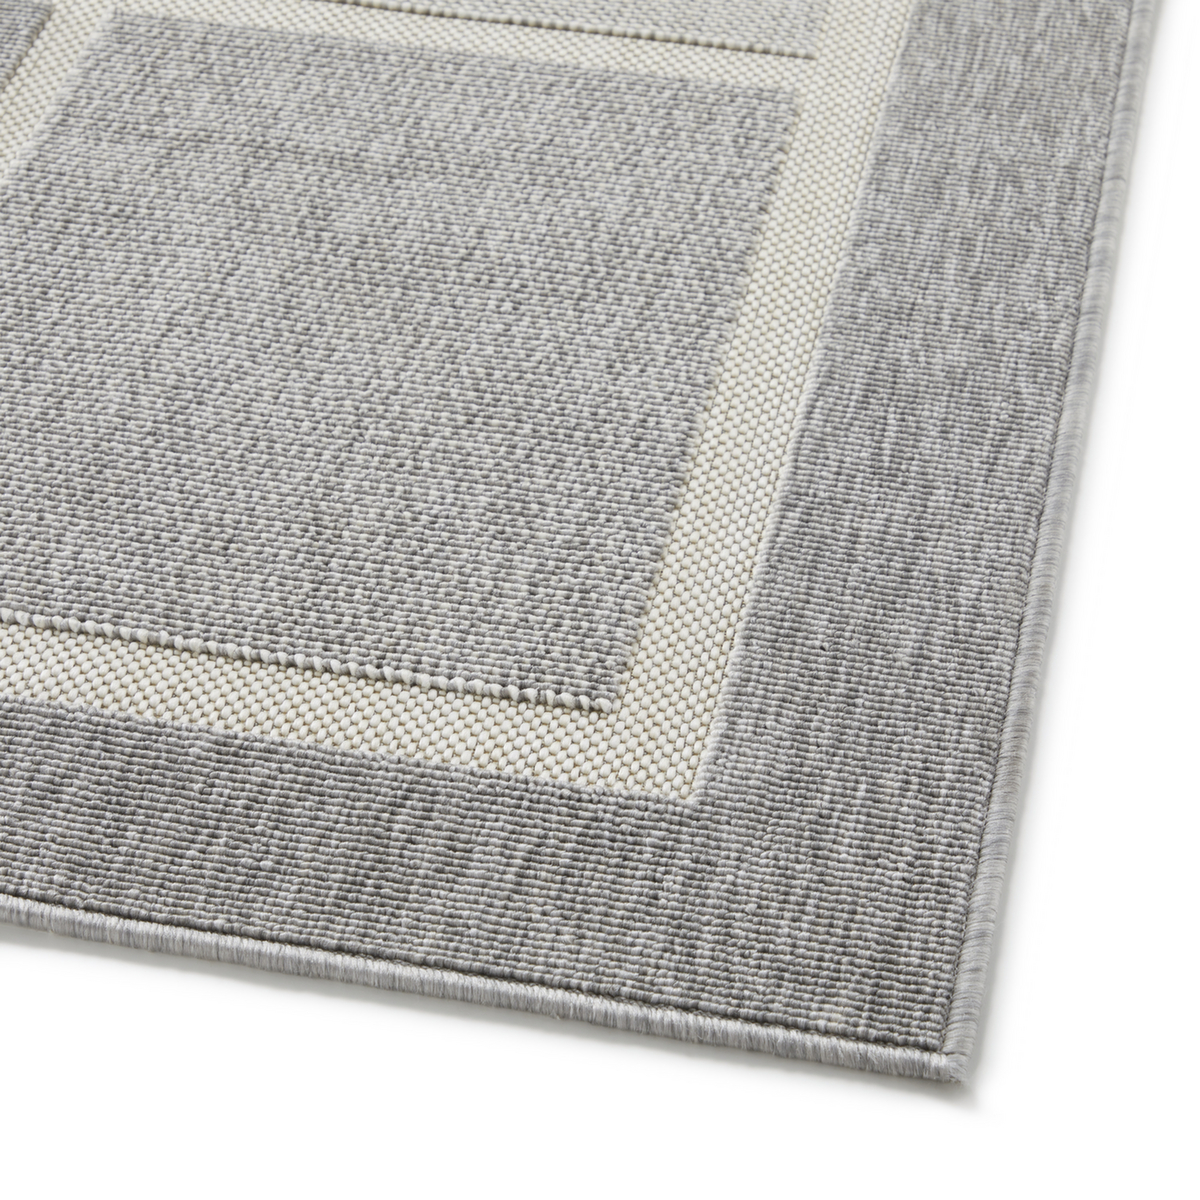 Paperflow Wetterfester Teppich Fenix für innen und außen Detail 1 ZOOM